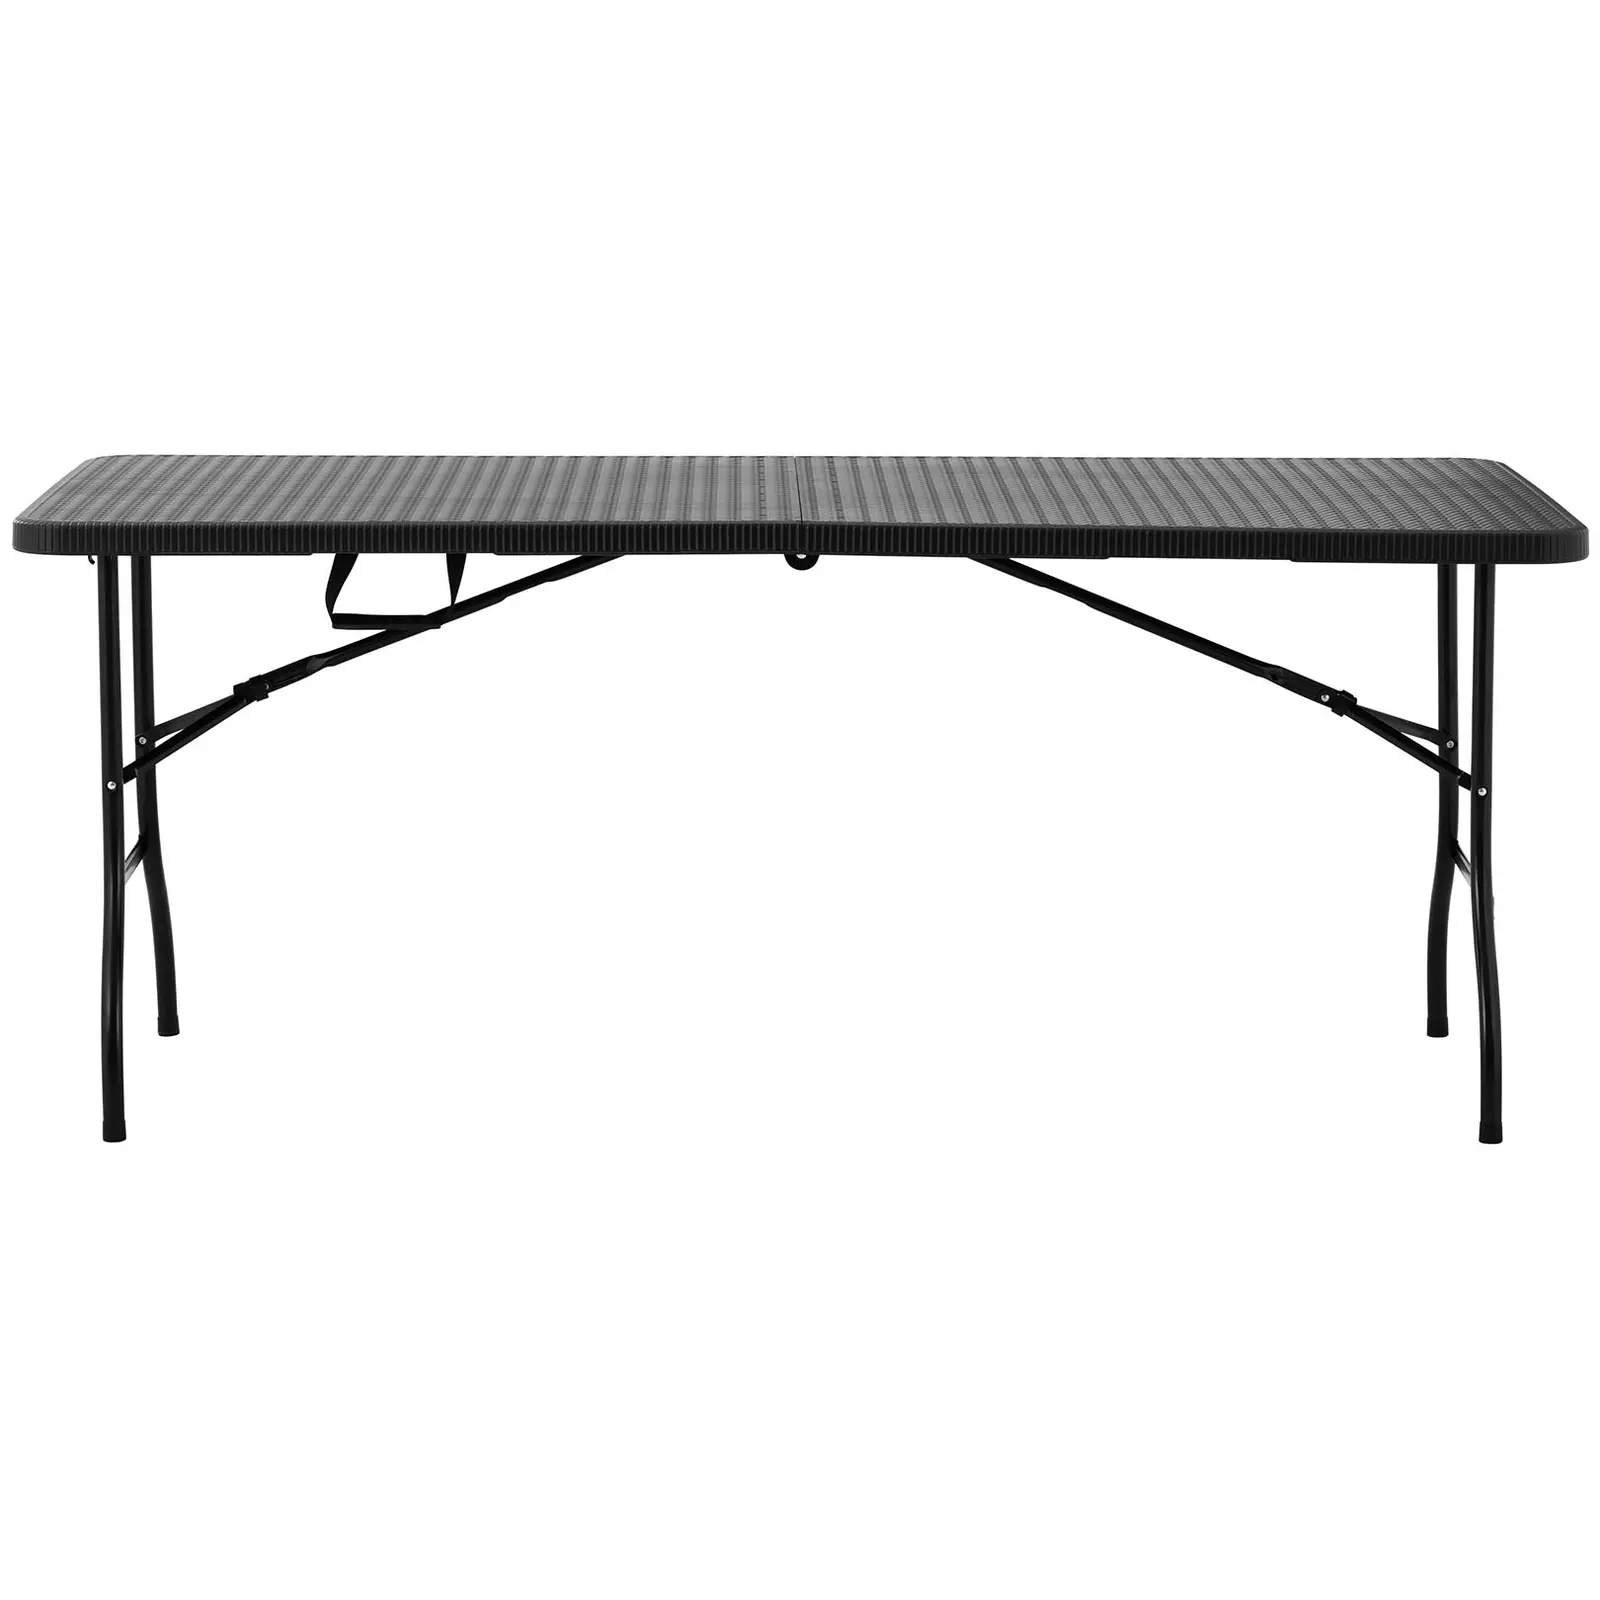 Összecsukható asztal - 1830 x 750 x 740 mm - Royal Catering - 150 kg - kültéri/beltéri - fekete